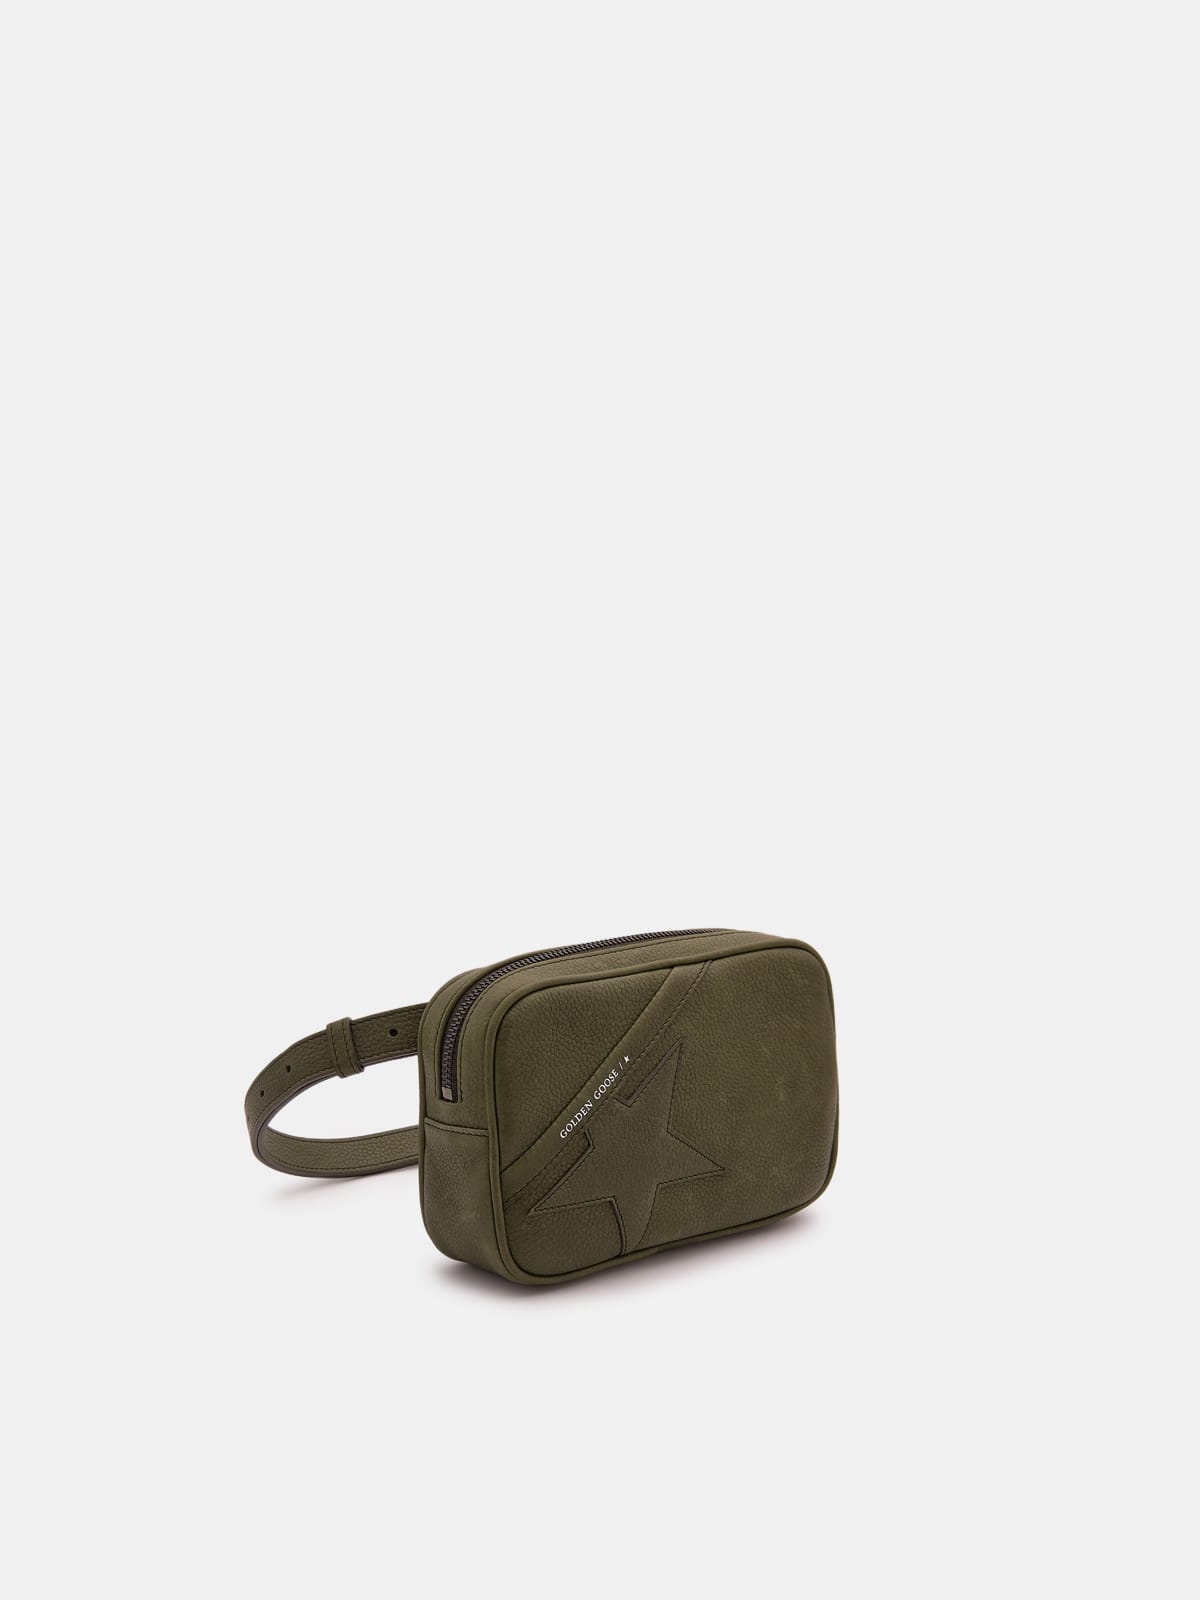 Golden Goose - Sac Star Bag vert militaire en cuir martelé in 